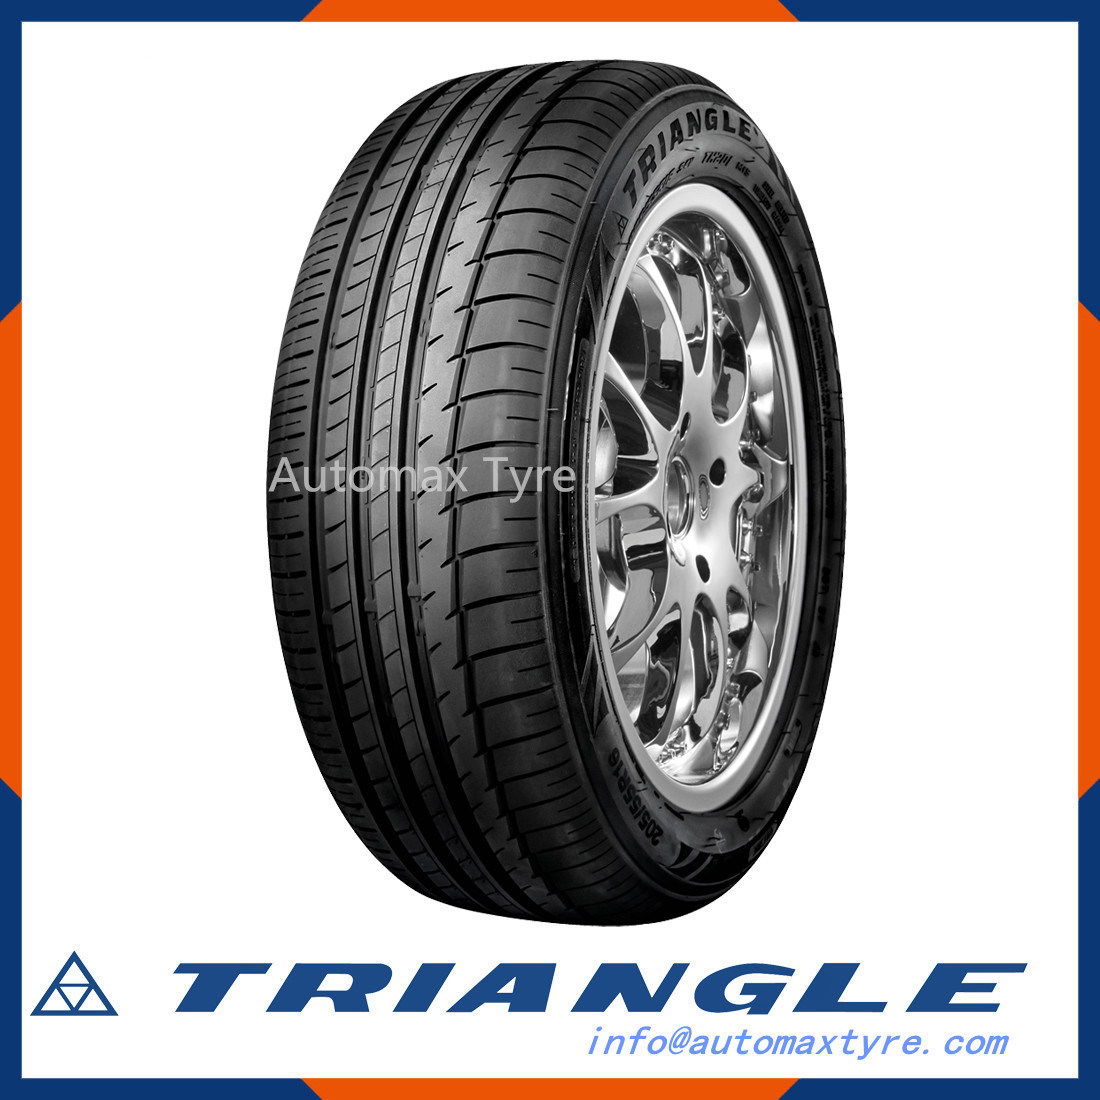 Triangle Brand New Pattern Radial Sport R16, R17, R18, R19, R14, R15, R13 Car Tyres